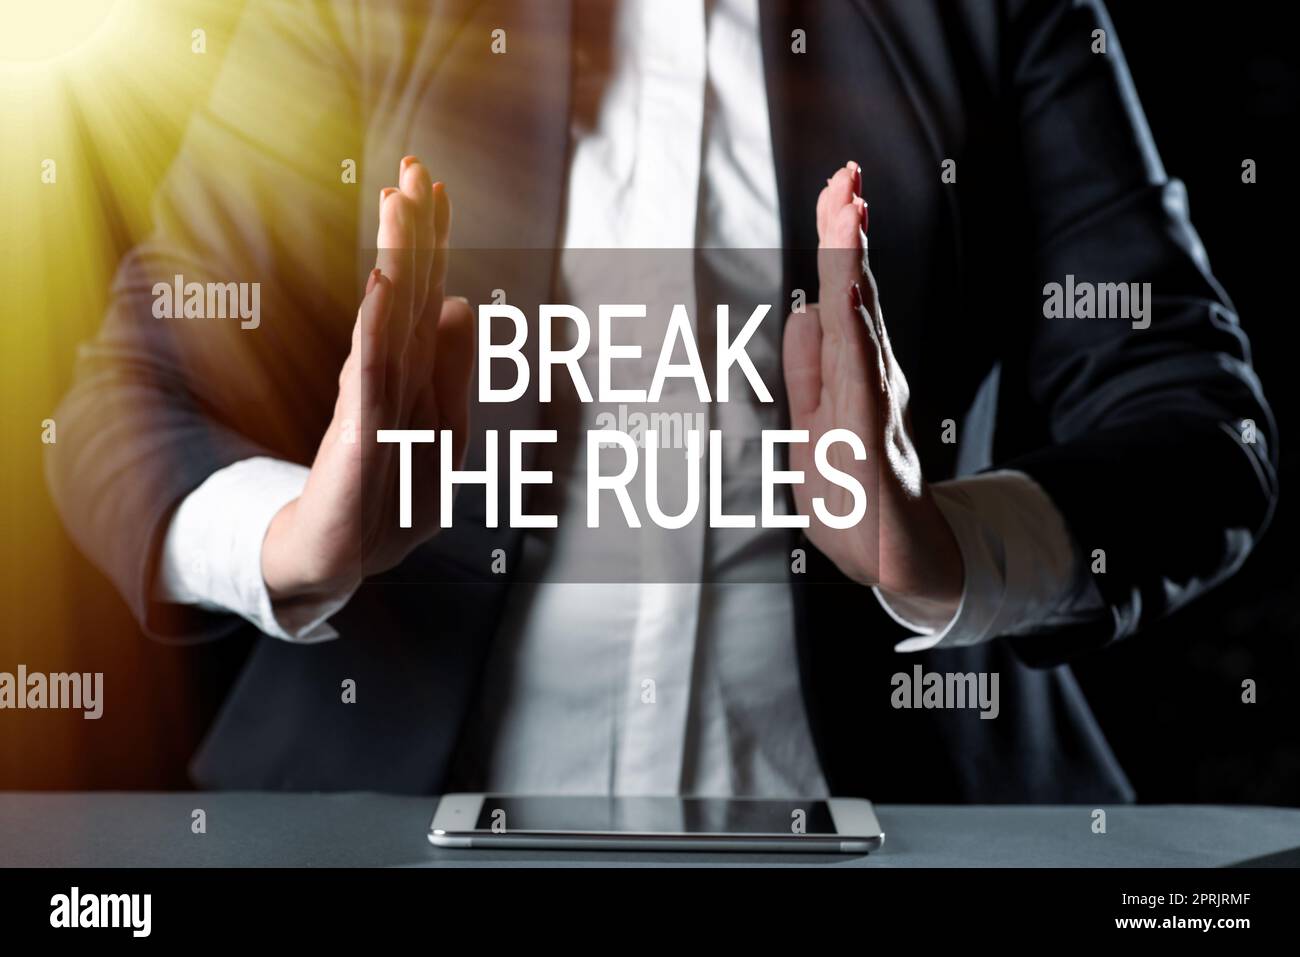 Textunterschrift mit „Break the RulesTo do something against formal rules and Restrictions“. Ein Wort, das gegen formale Regeln und Einschränkungen verstößt Stockfoto